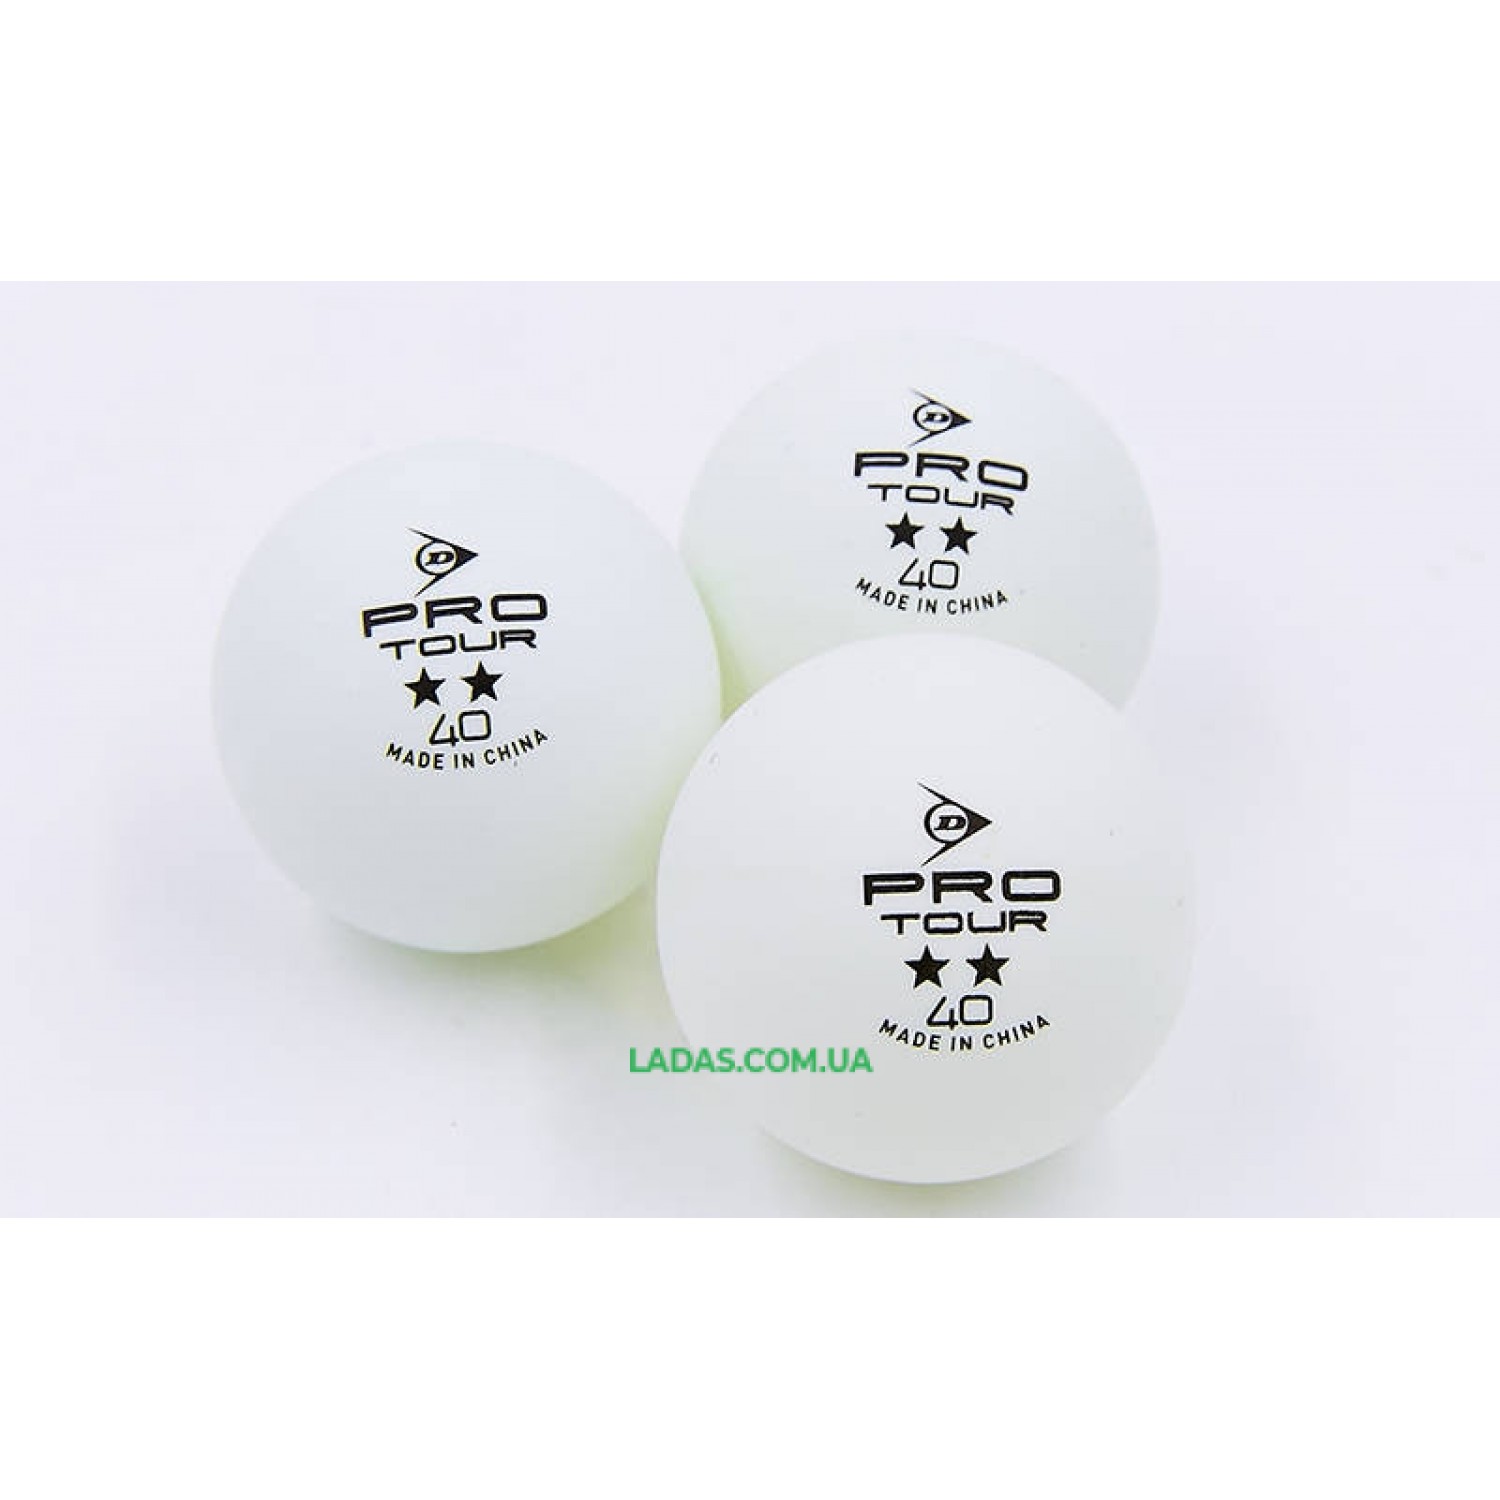 Набор мячей для настольного тенниса 3 штуки DUNLOP 2star PRO TOUR (пластик, d-40мм, белый)